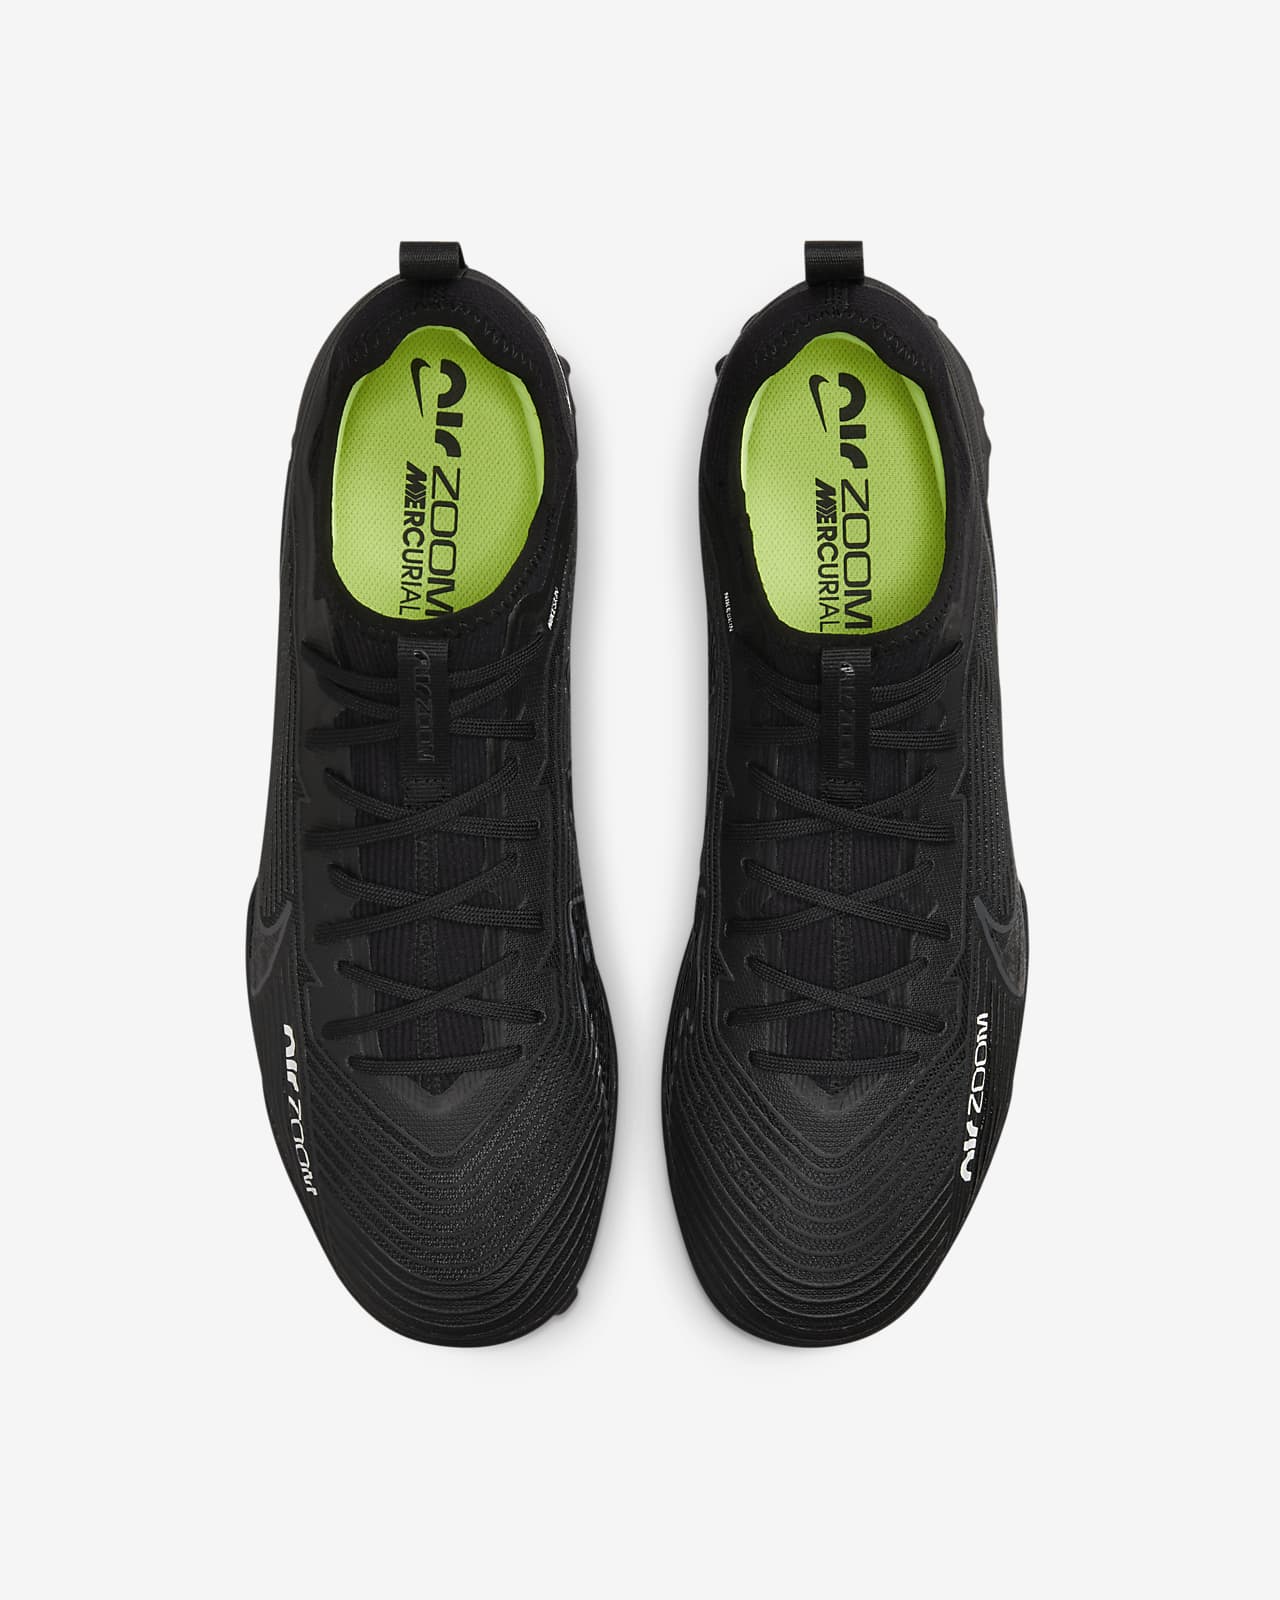 Demon Play zorro virar Calzado de fútbol para pasto sintético (turf) Nike Mercurial Vapor 15 Pro.  Nike.com